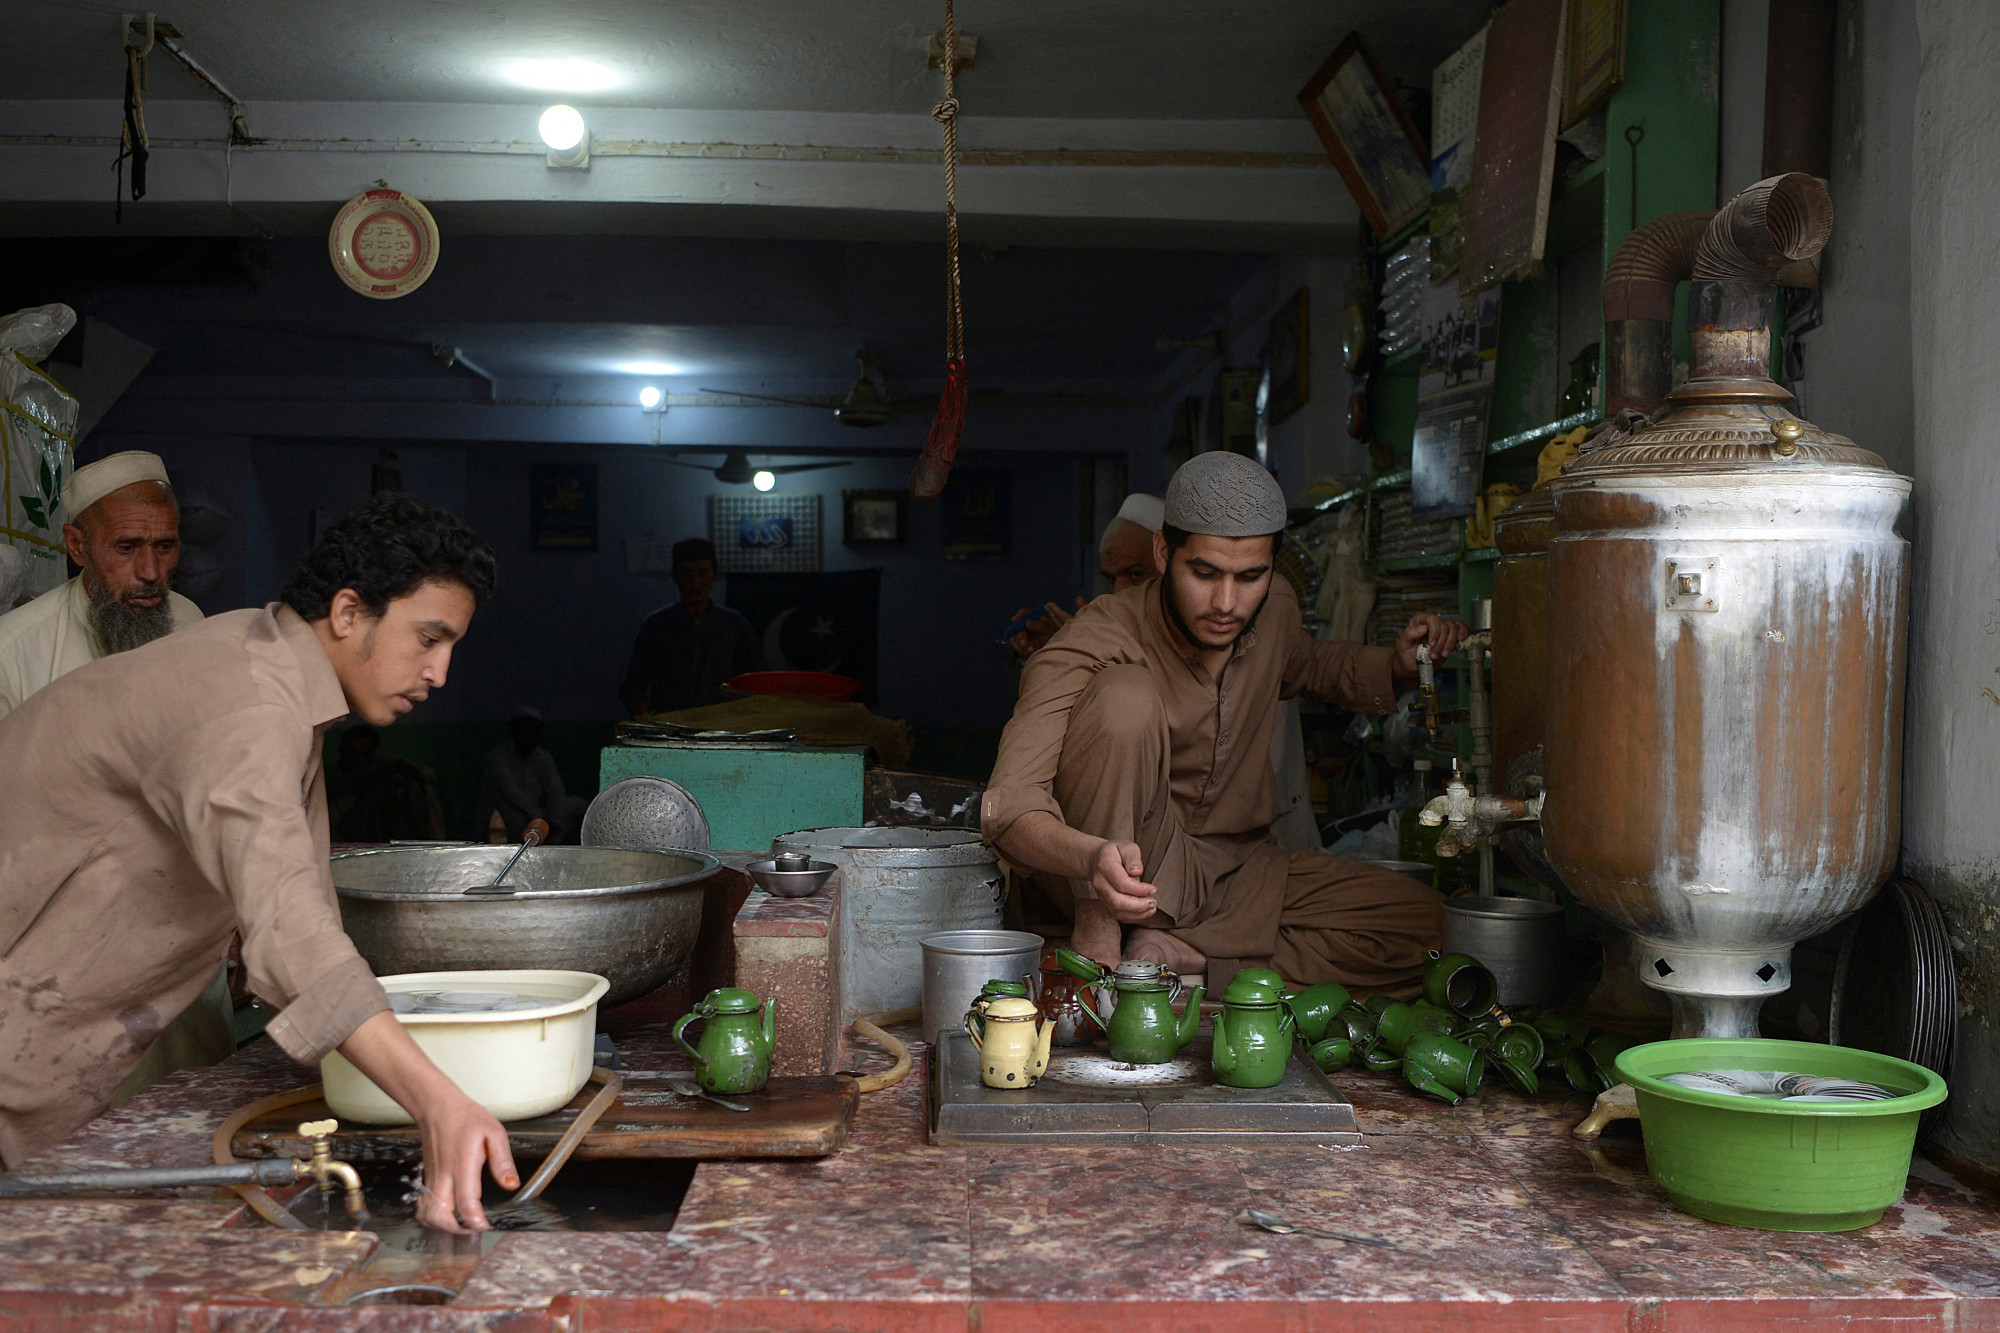 Igyanak kevesebb teát az ország valutatartalékának védelmében, kéri a pakisztáni kormány